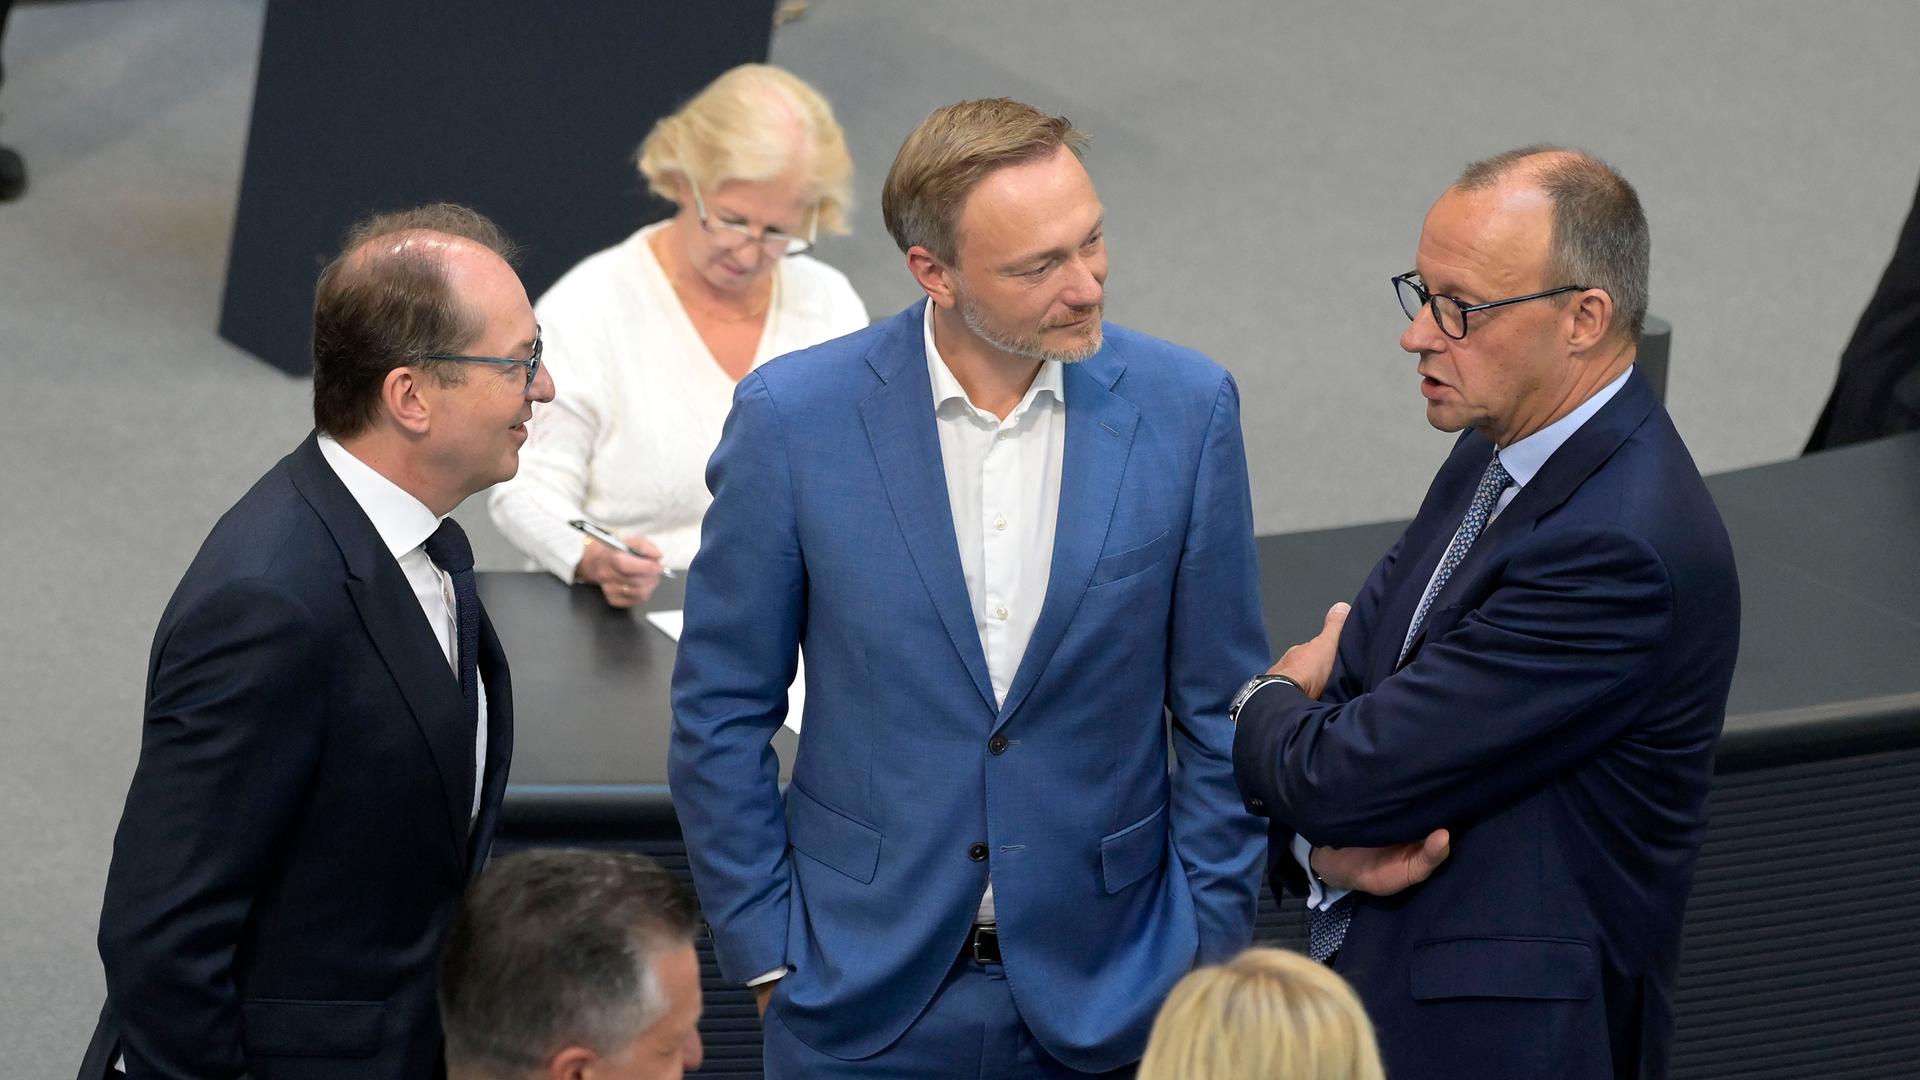 Alexander Dobrindt, Christian Lindner und Friedrich Merz (v.l.n.r.) stehen bei einer Sitzung im Bundestag zusammen.